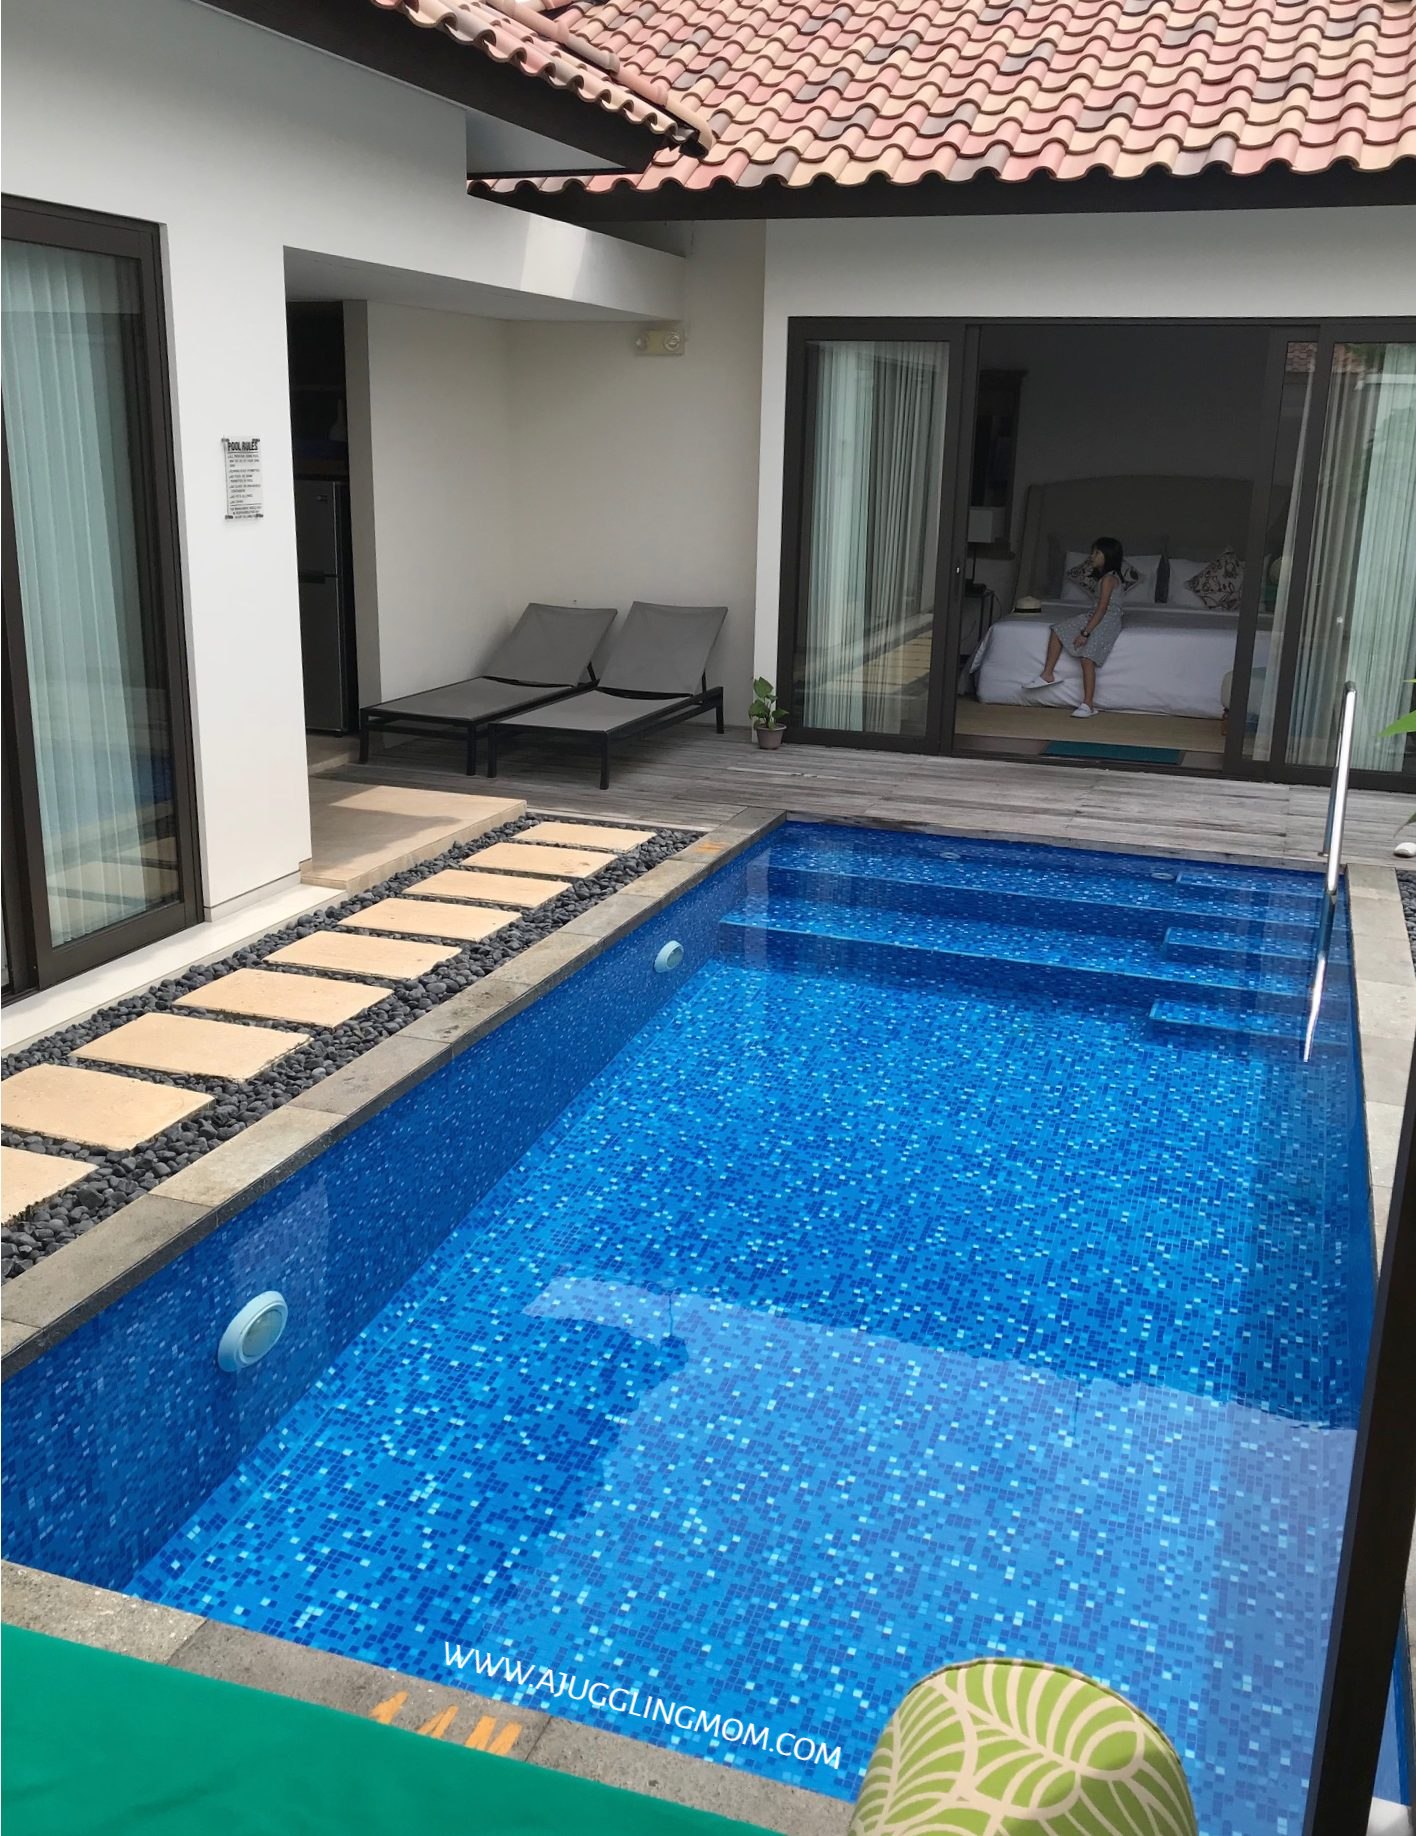 Holiday Villa Pantai Indah In Bintan Review A Juggling Mom - 